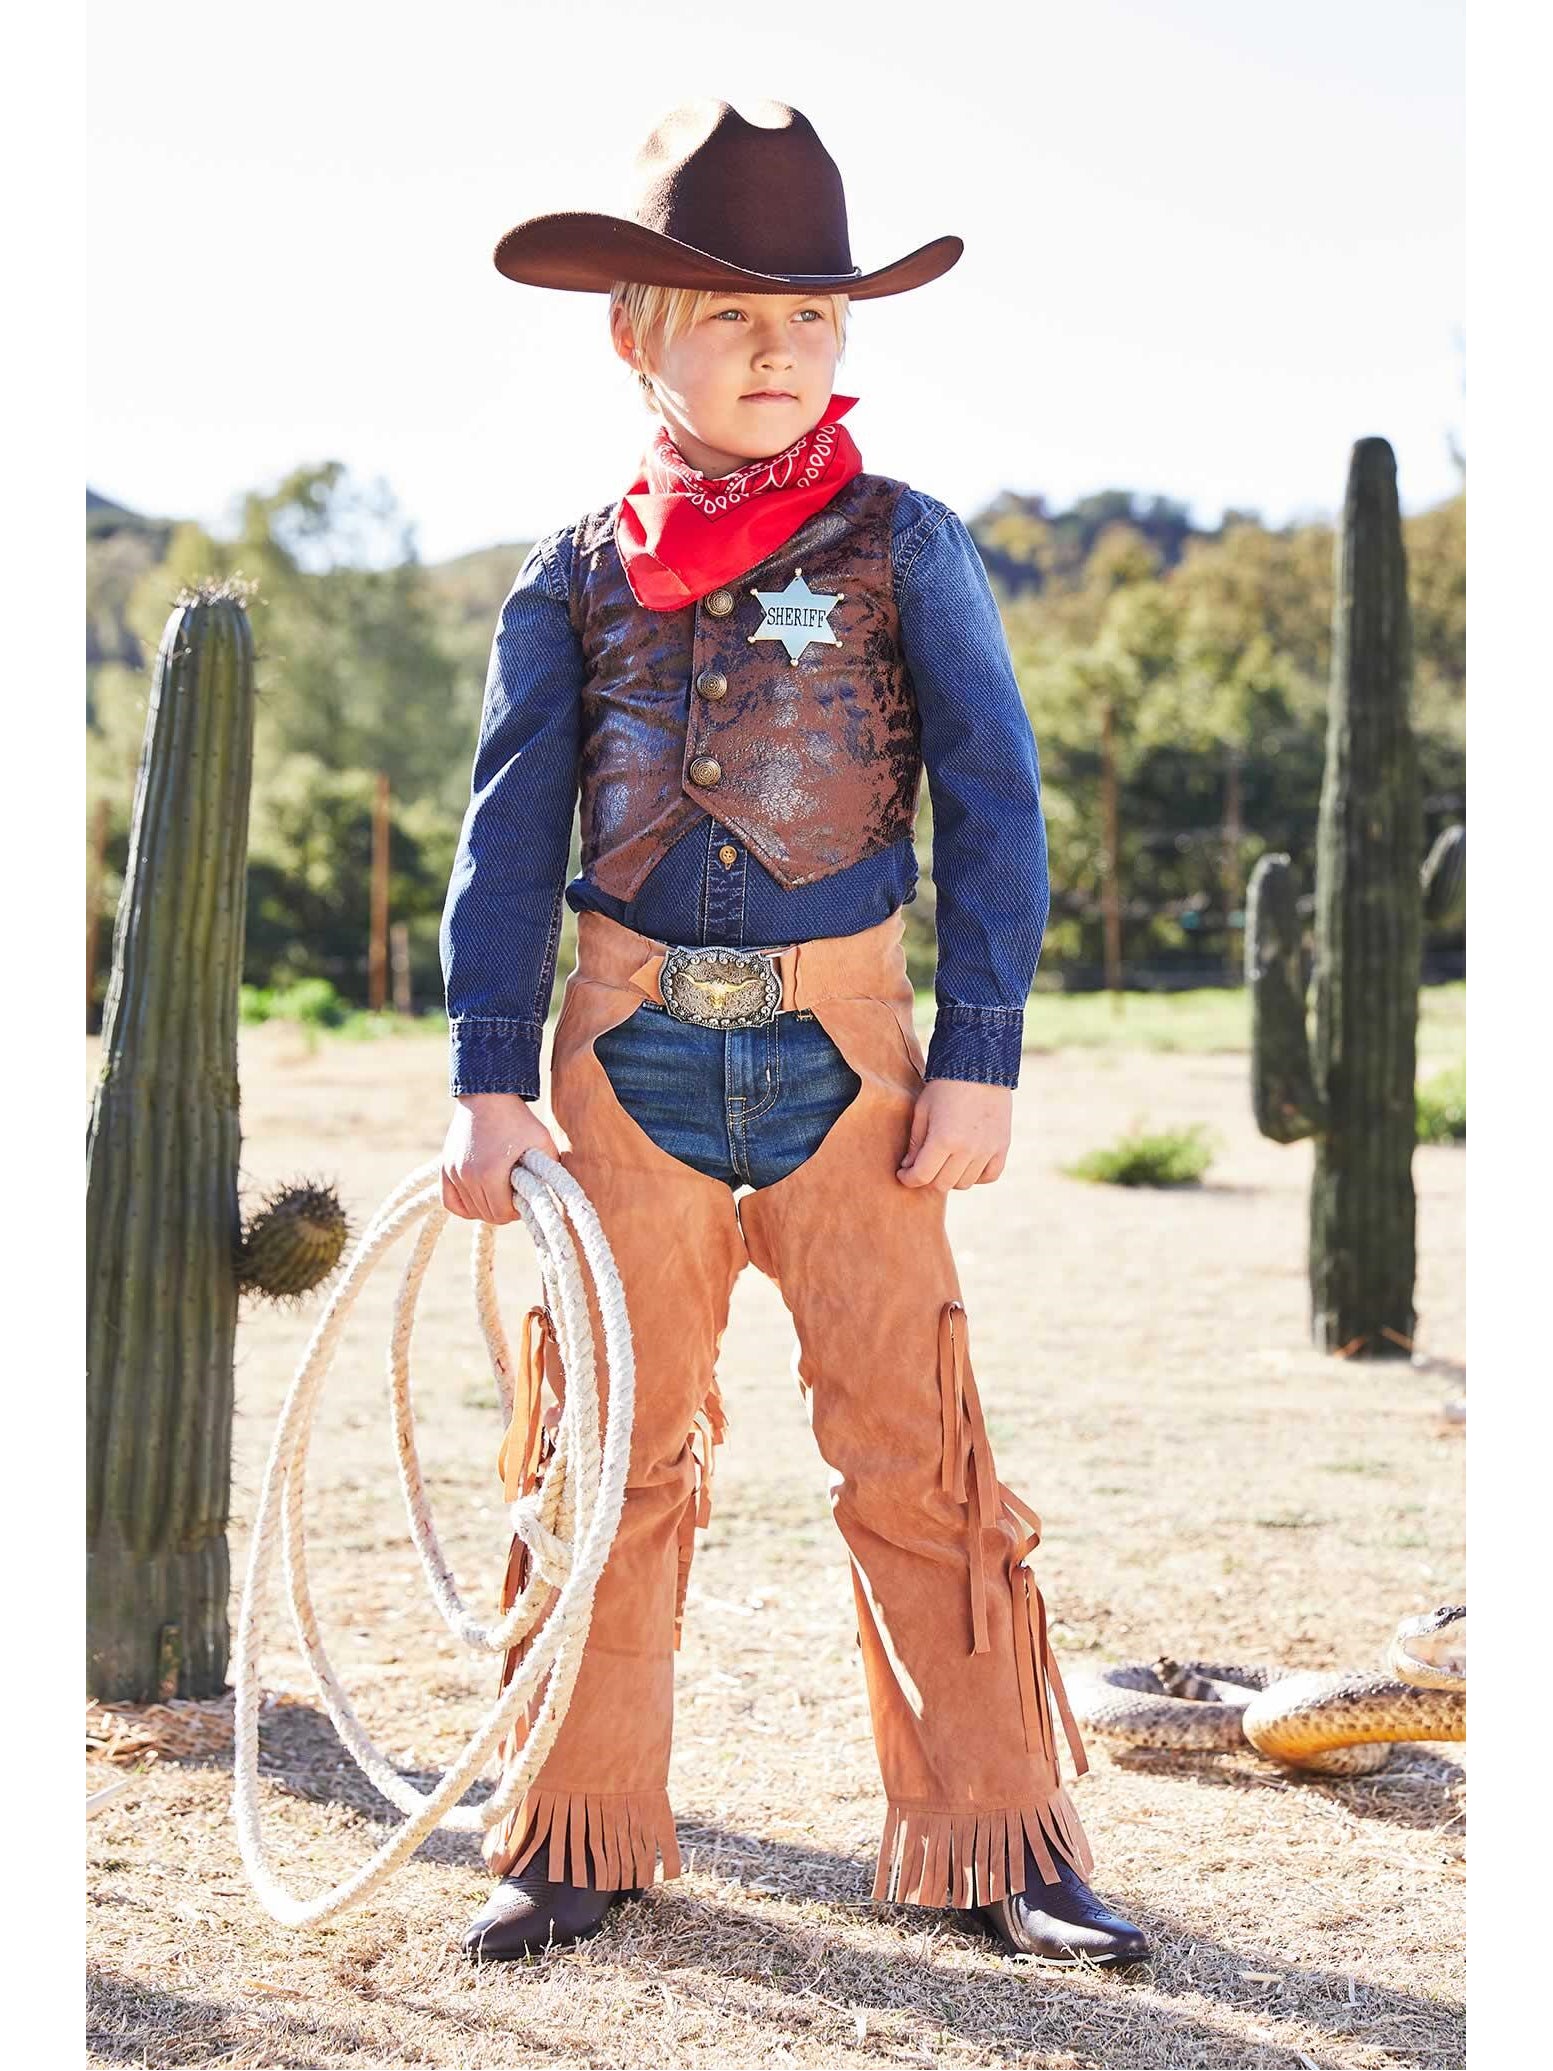 Фото нагенца ковбоя. Ковбойская одежда для детей. Ковбойская одежда для мальчиков. Наряд ковбоя для мальчика. Ковбои костюмы для детей.